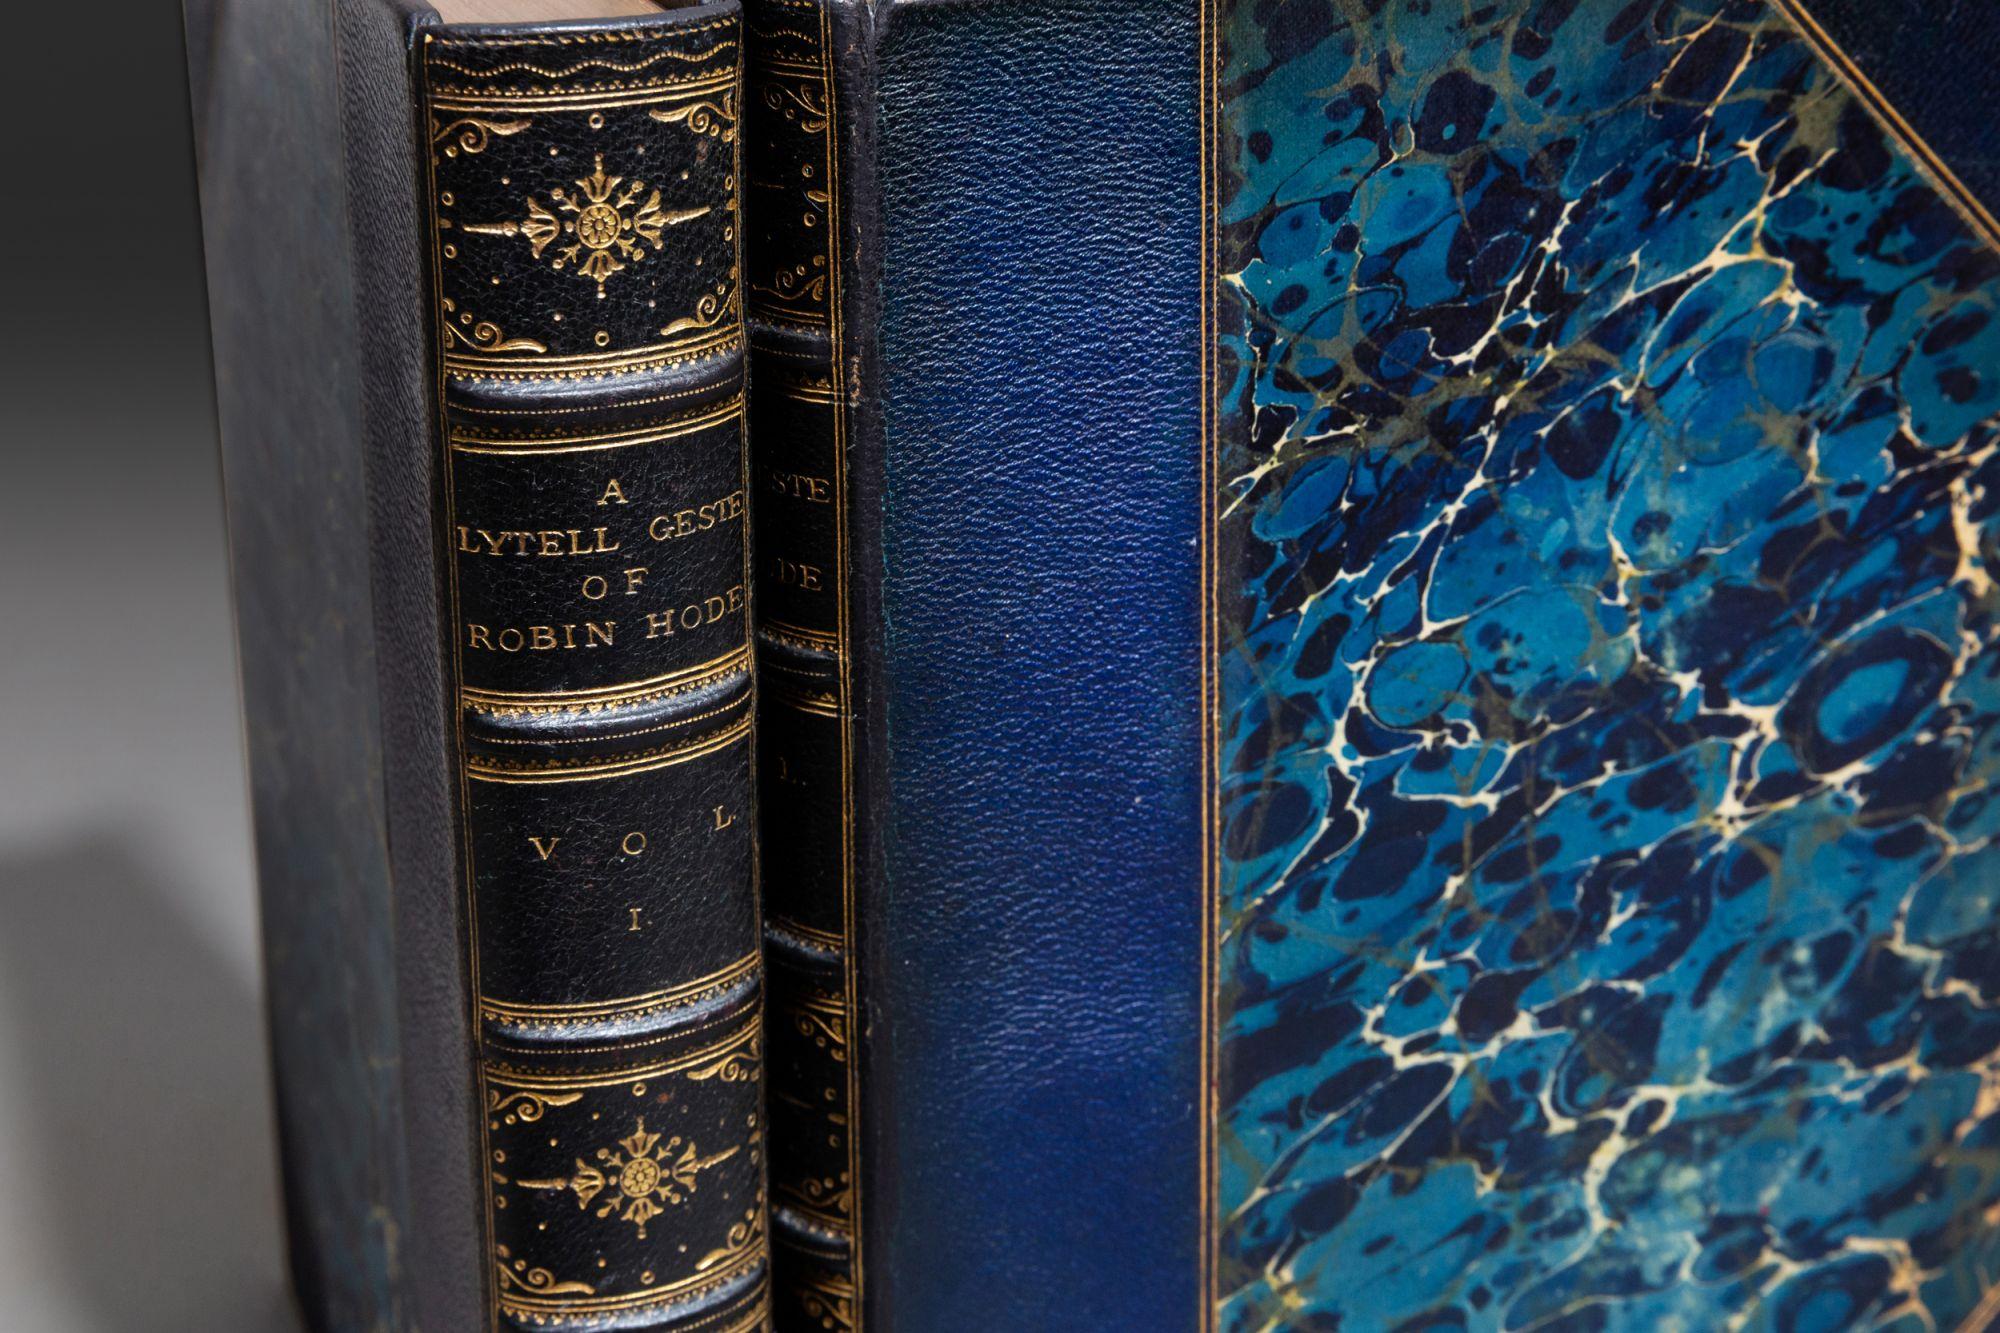 19th Century 'Book Sets' 2 Volumes, John Mathew Gutch, A Lytell Geste of Robin Hode